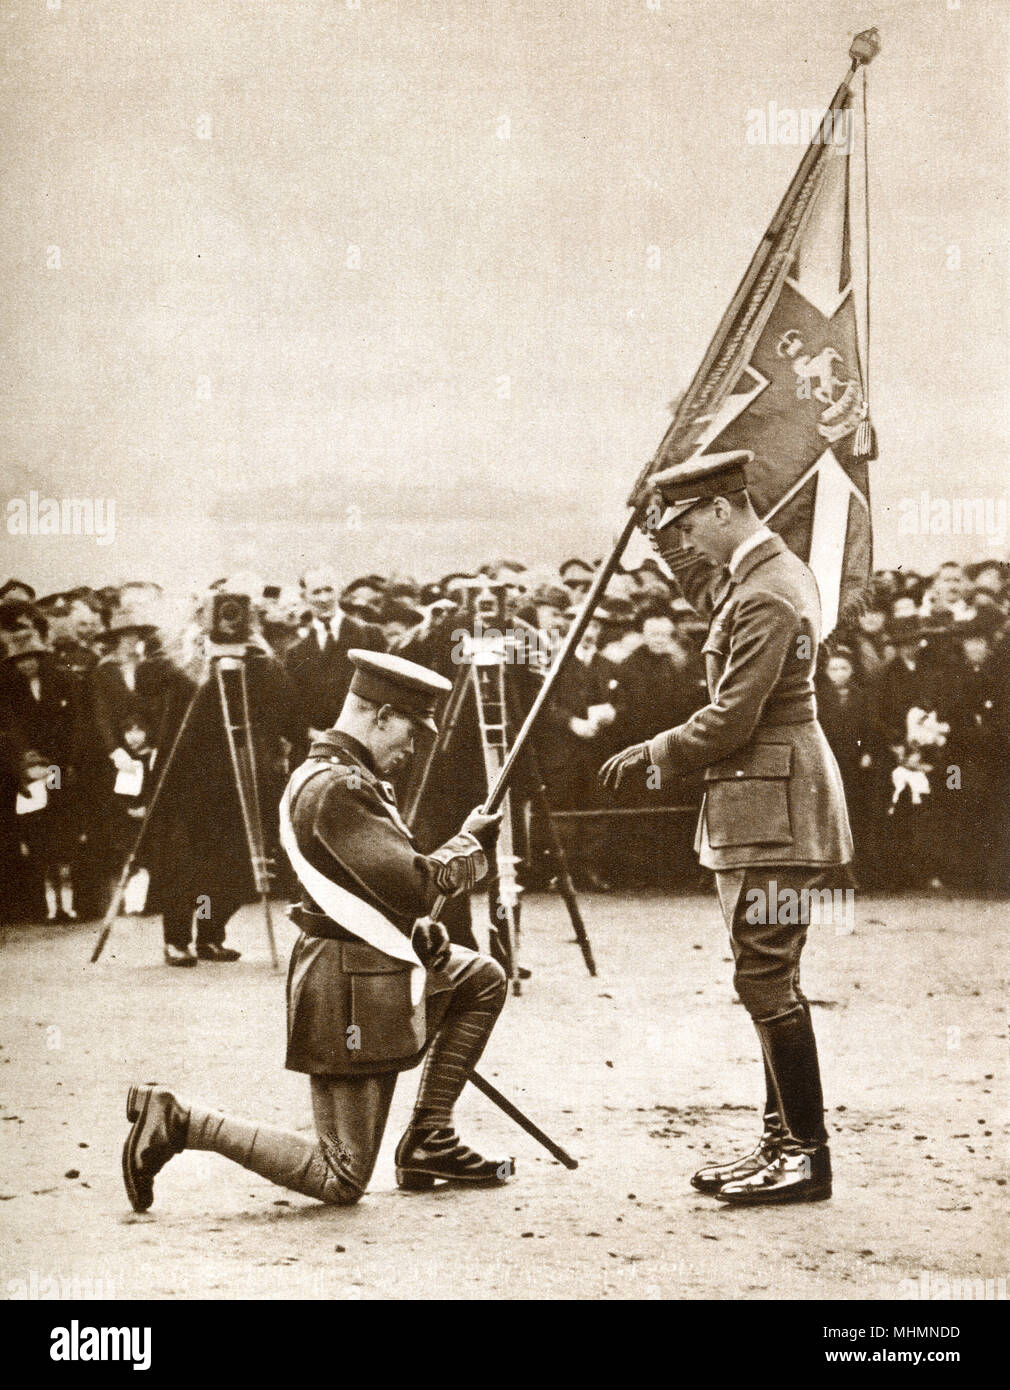 El Príncipe Alberto (futuro Rey George VI) (1895-1952) visitando el 20º Batallón, el Regimiento de Londres en Blackheath - abril de 1920. Aquí el Príncipe es visto presentando los colores del Rey. Fecha: 1920 Foto de stock